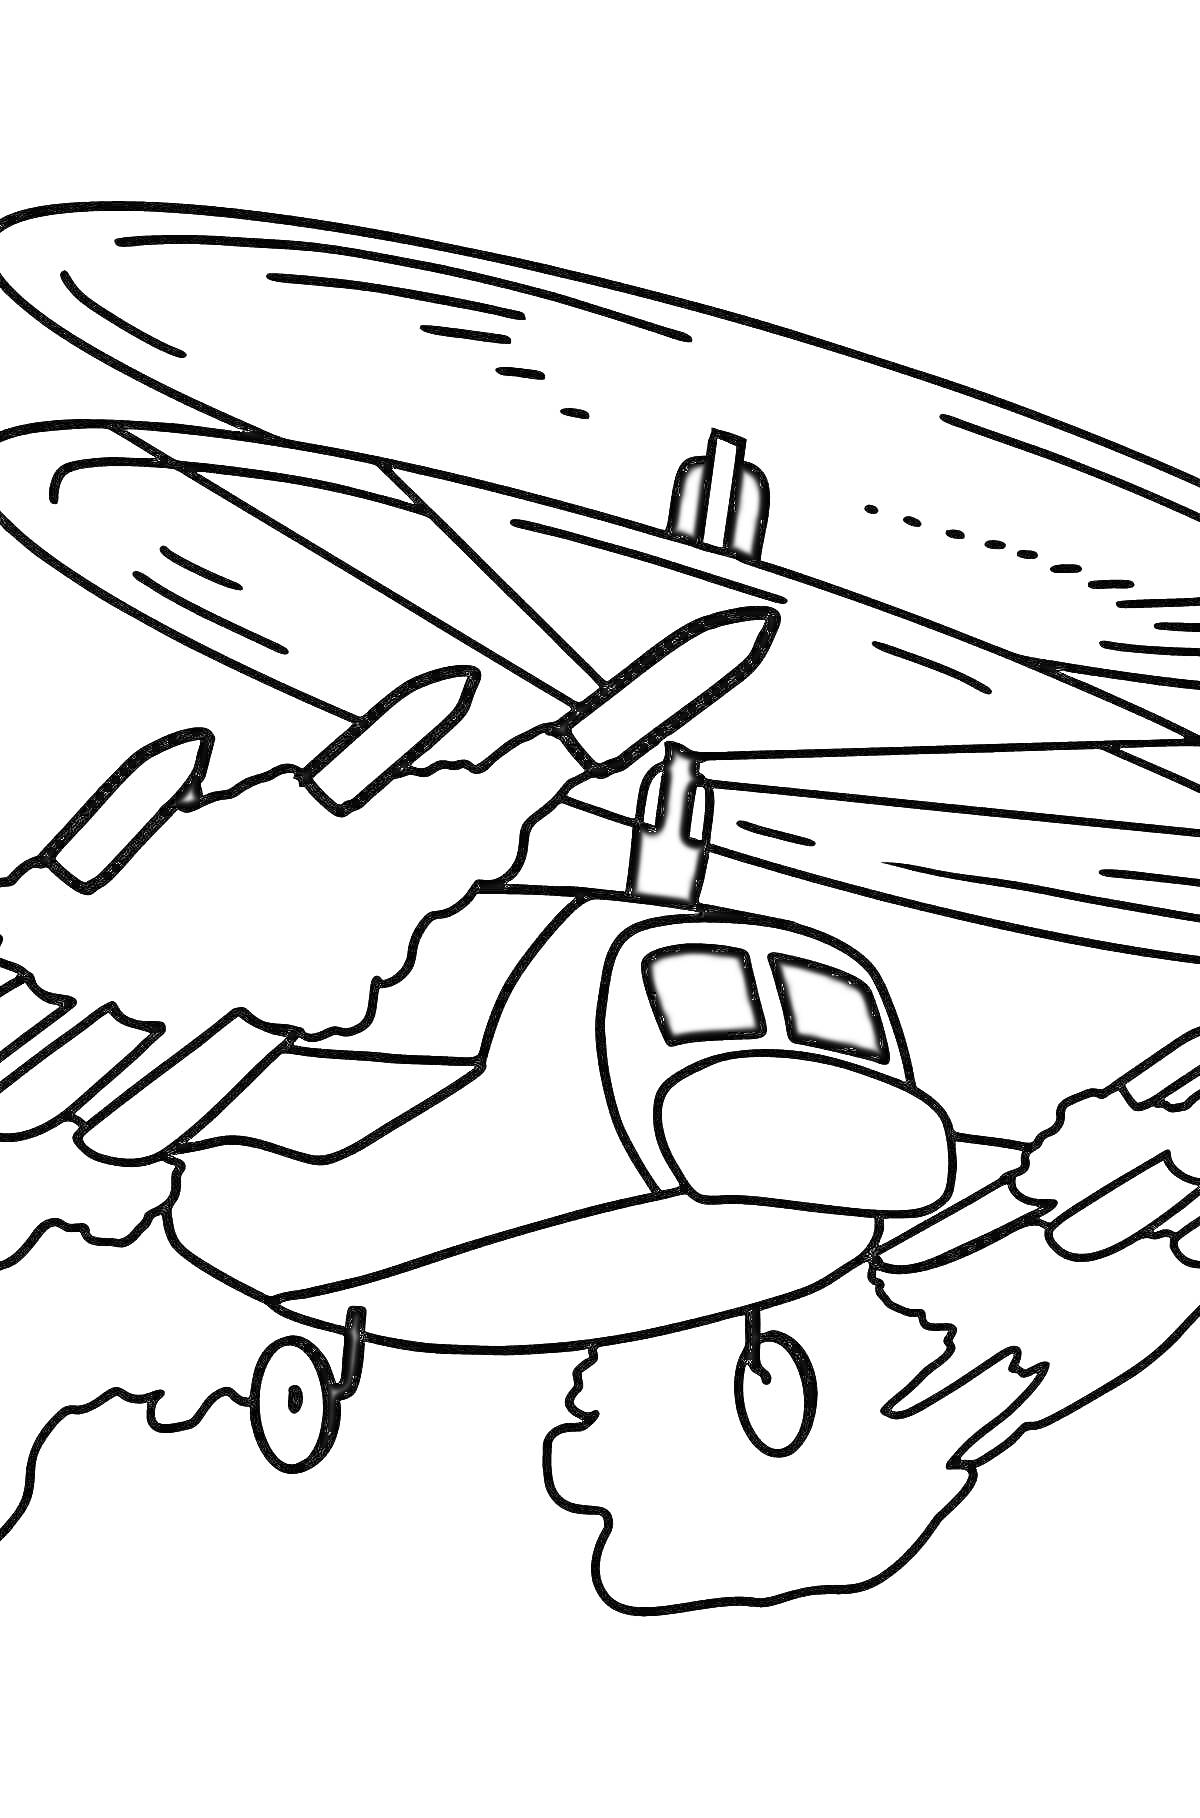 Раскраска Военный вертолет в полете с вращающимися лопастями и хвостовым винтом